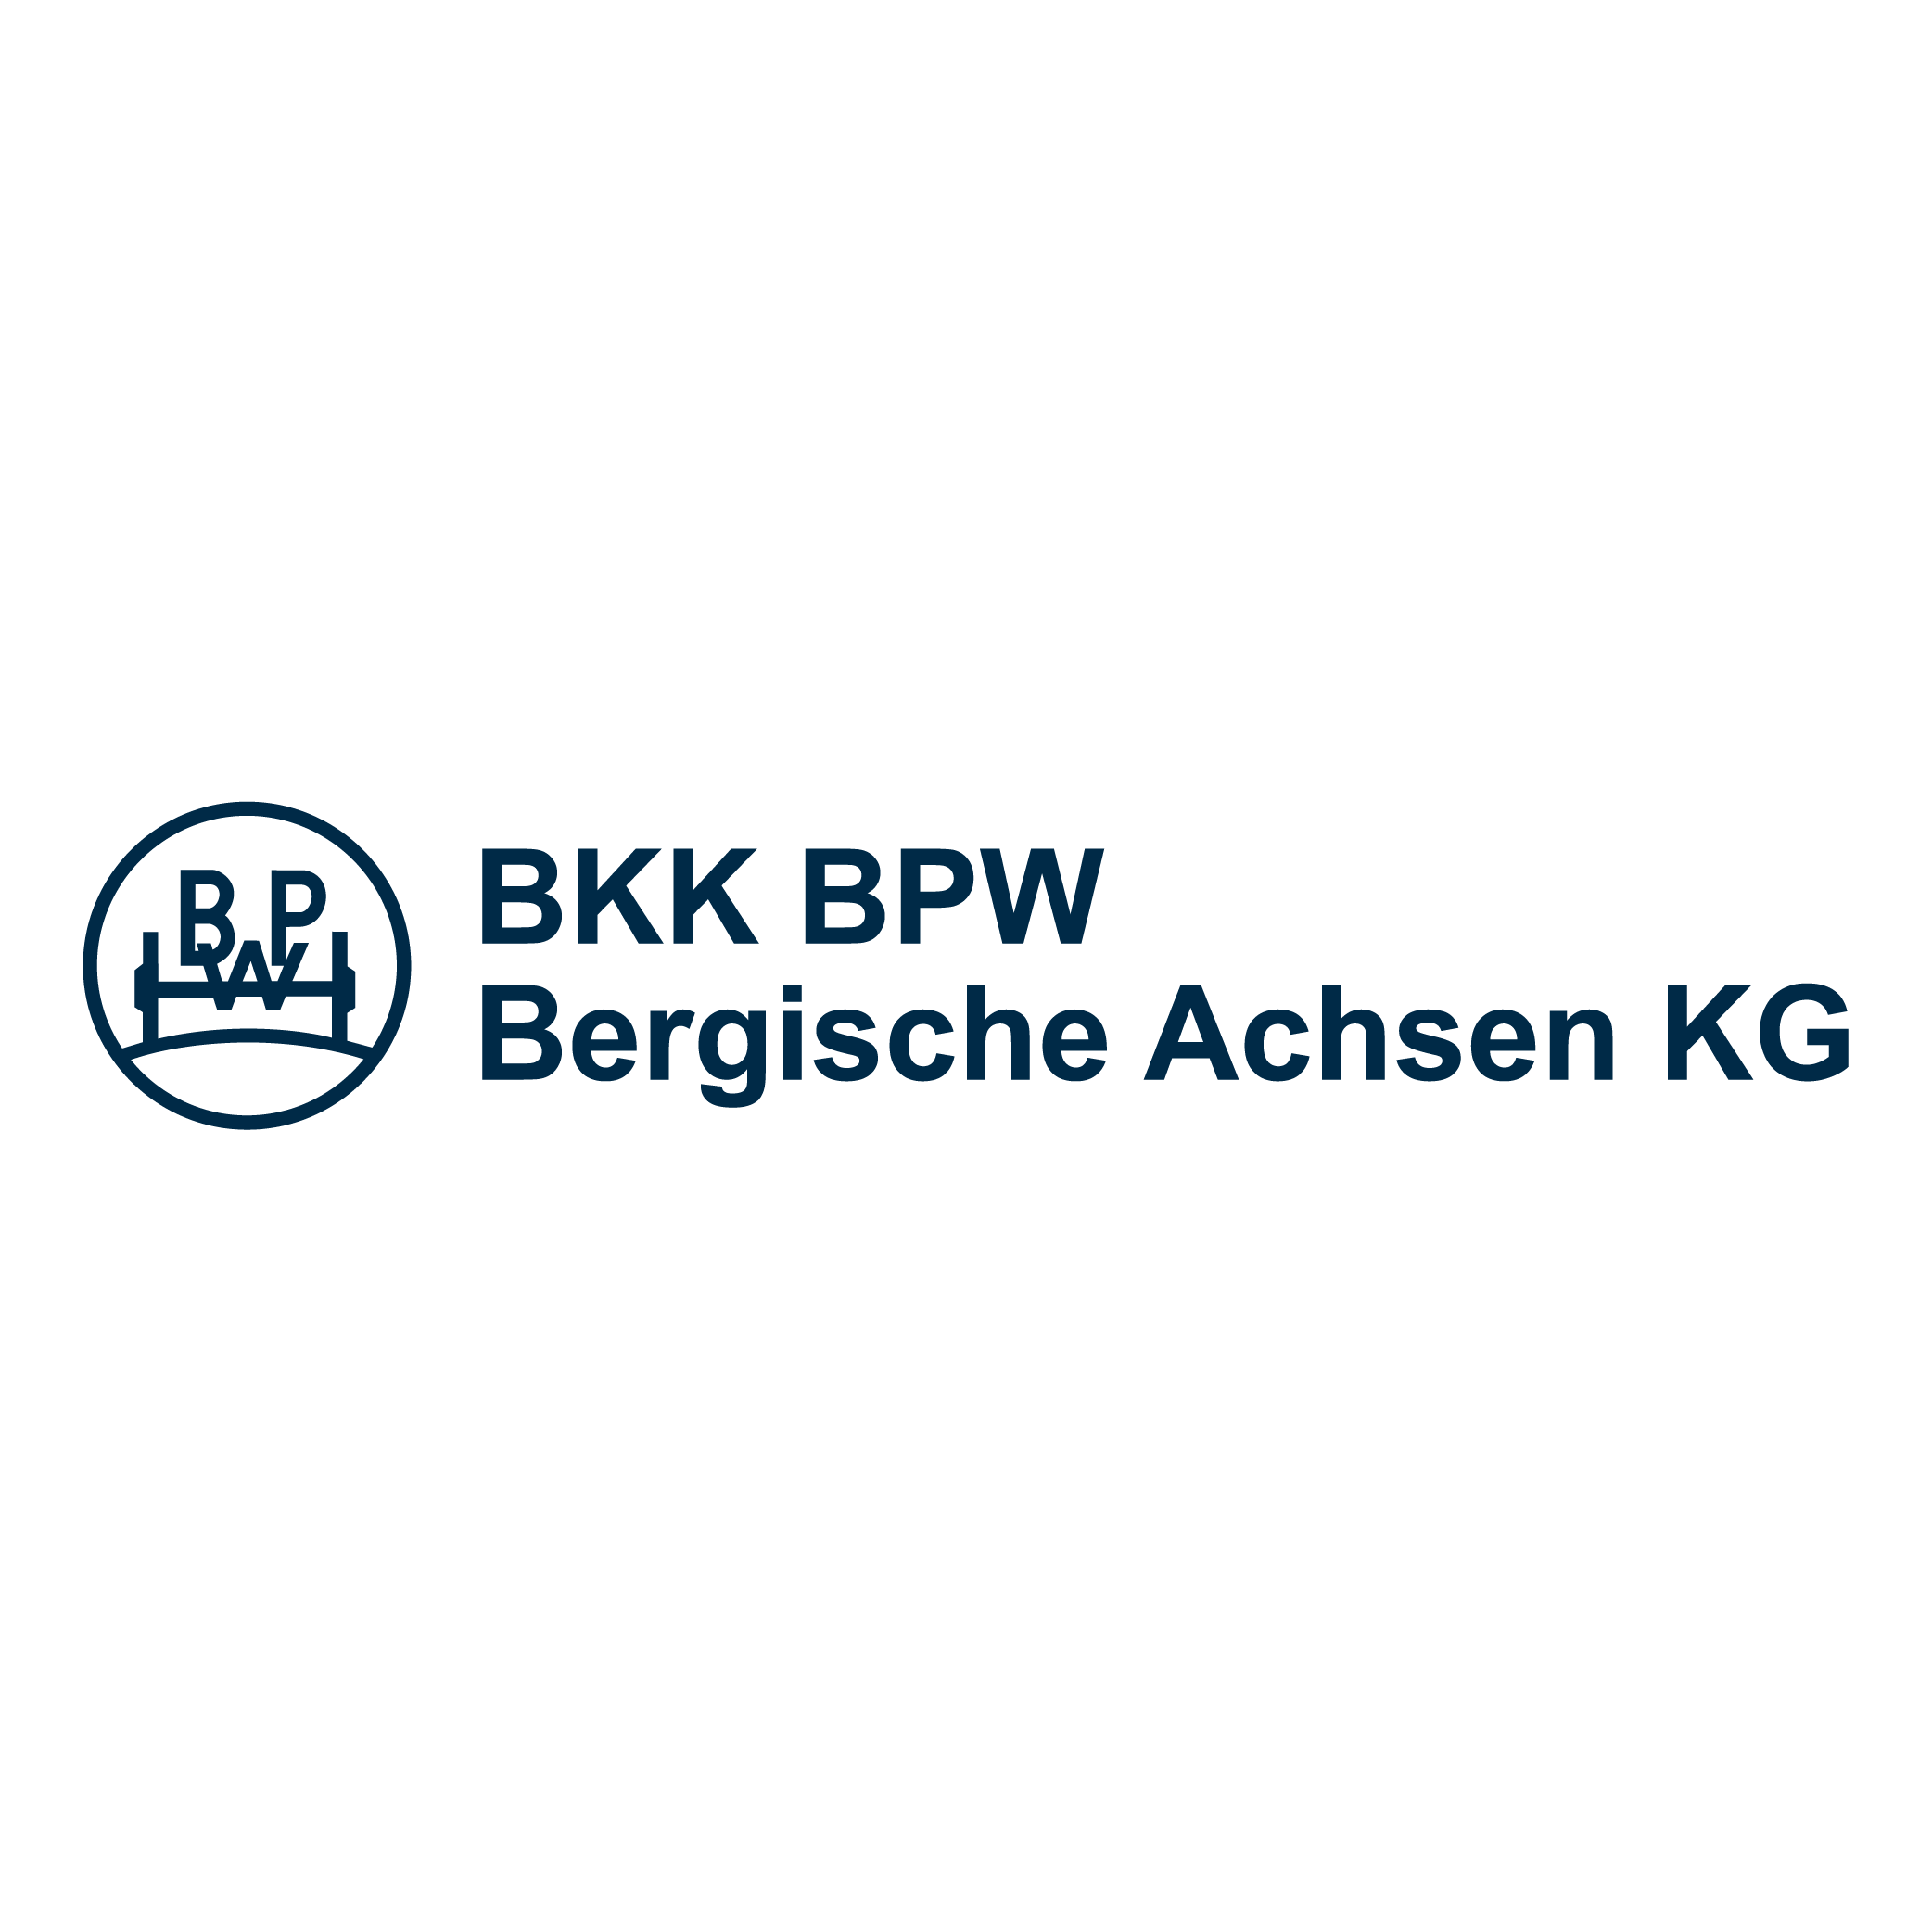 Markenzeichen der BKK BPW Bergische Achsen KG